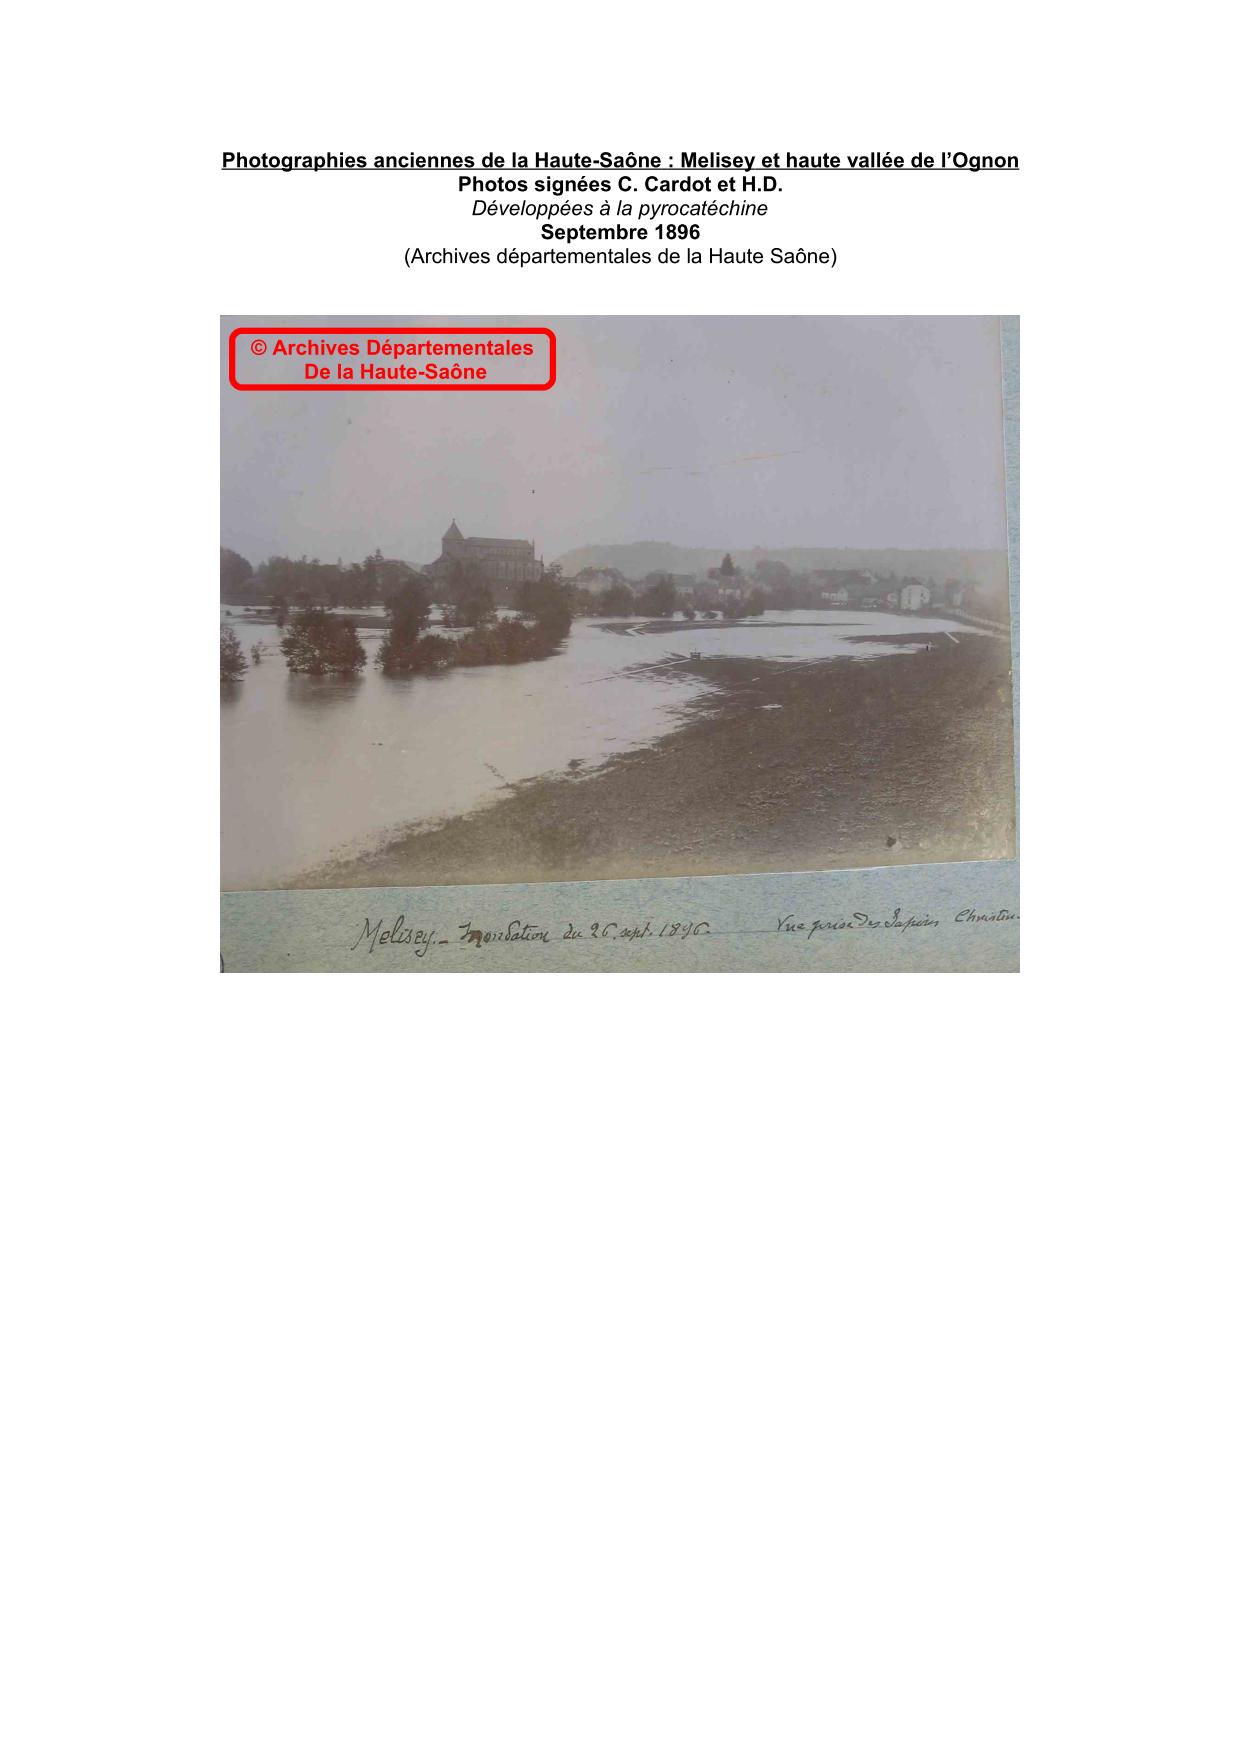 Photographies anciennes de la Haute-Saône : Melisey et haute vallée de l’Ognon – 1896